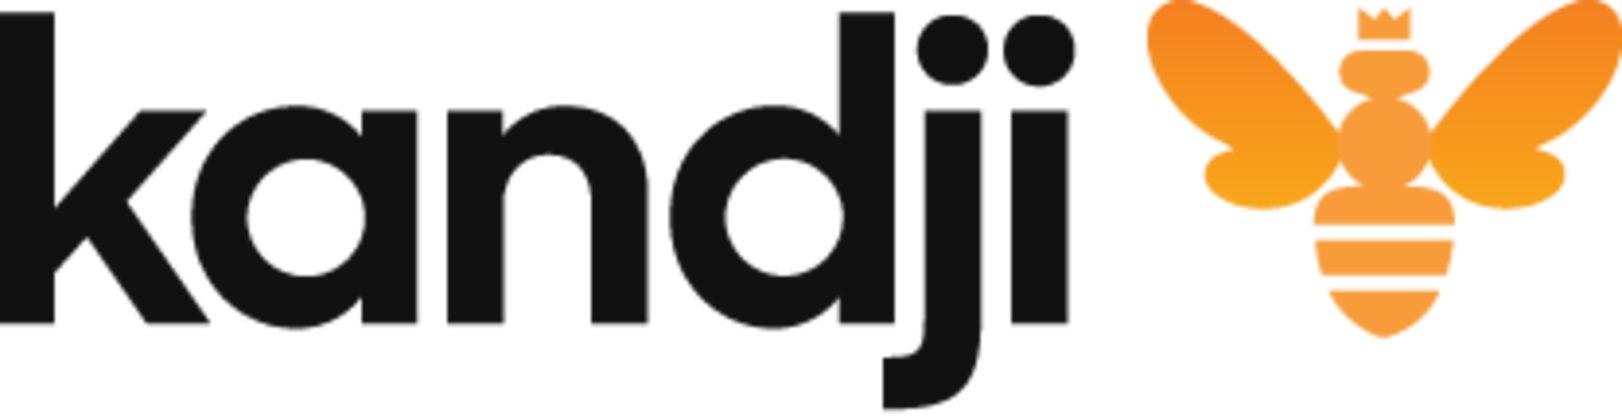 kandji logo